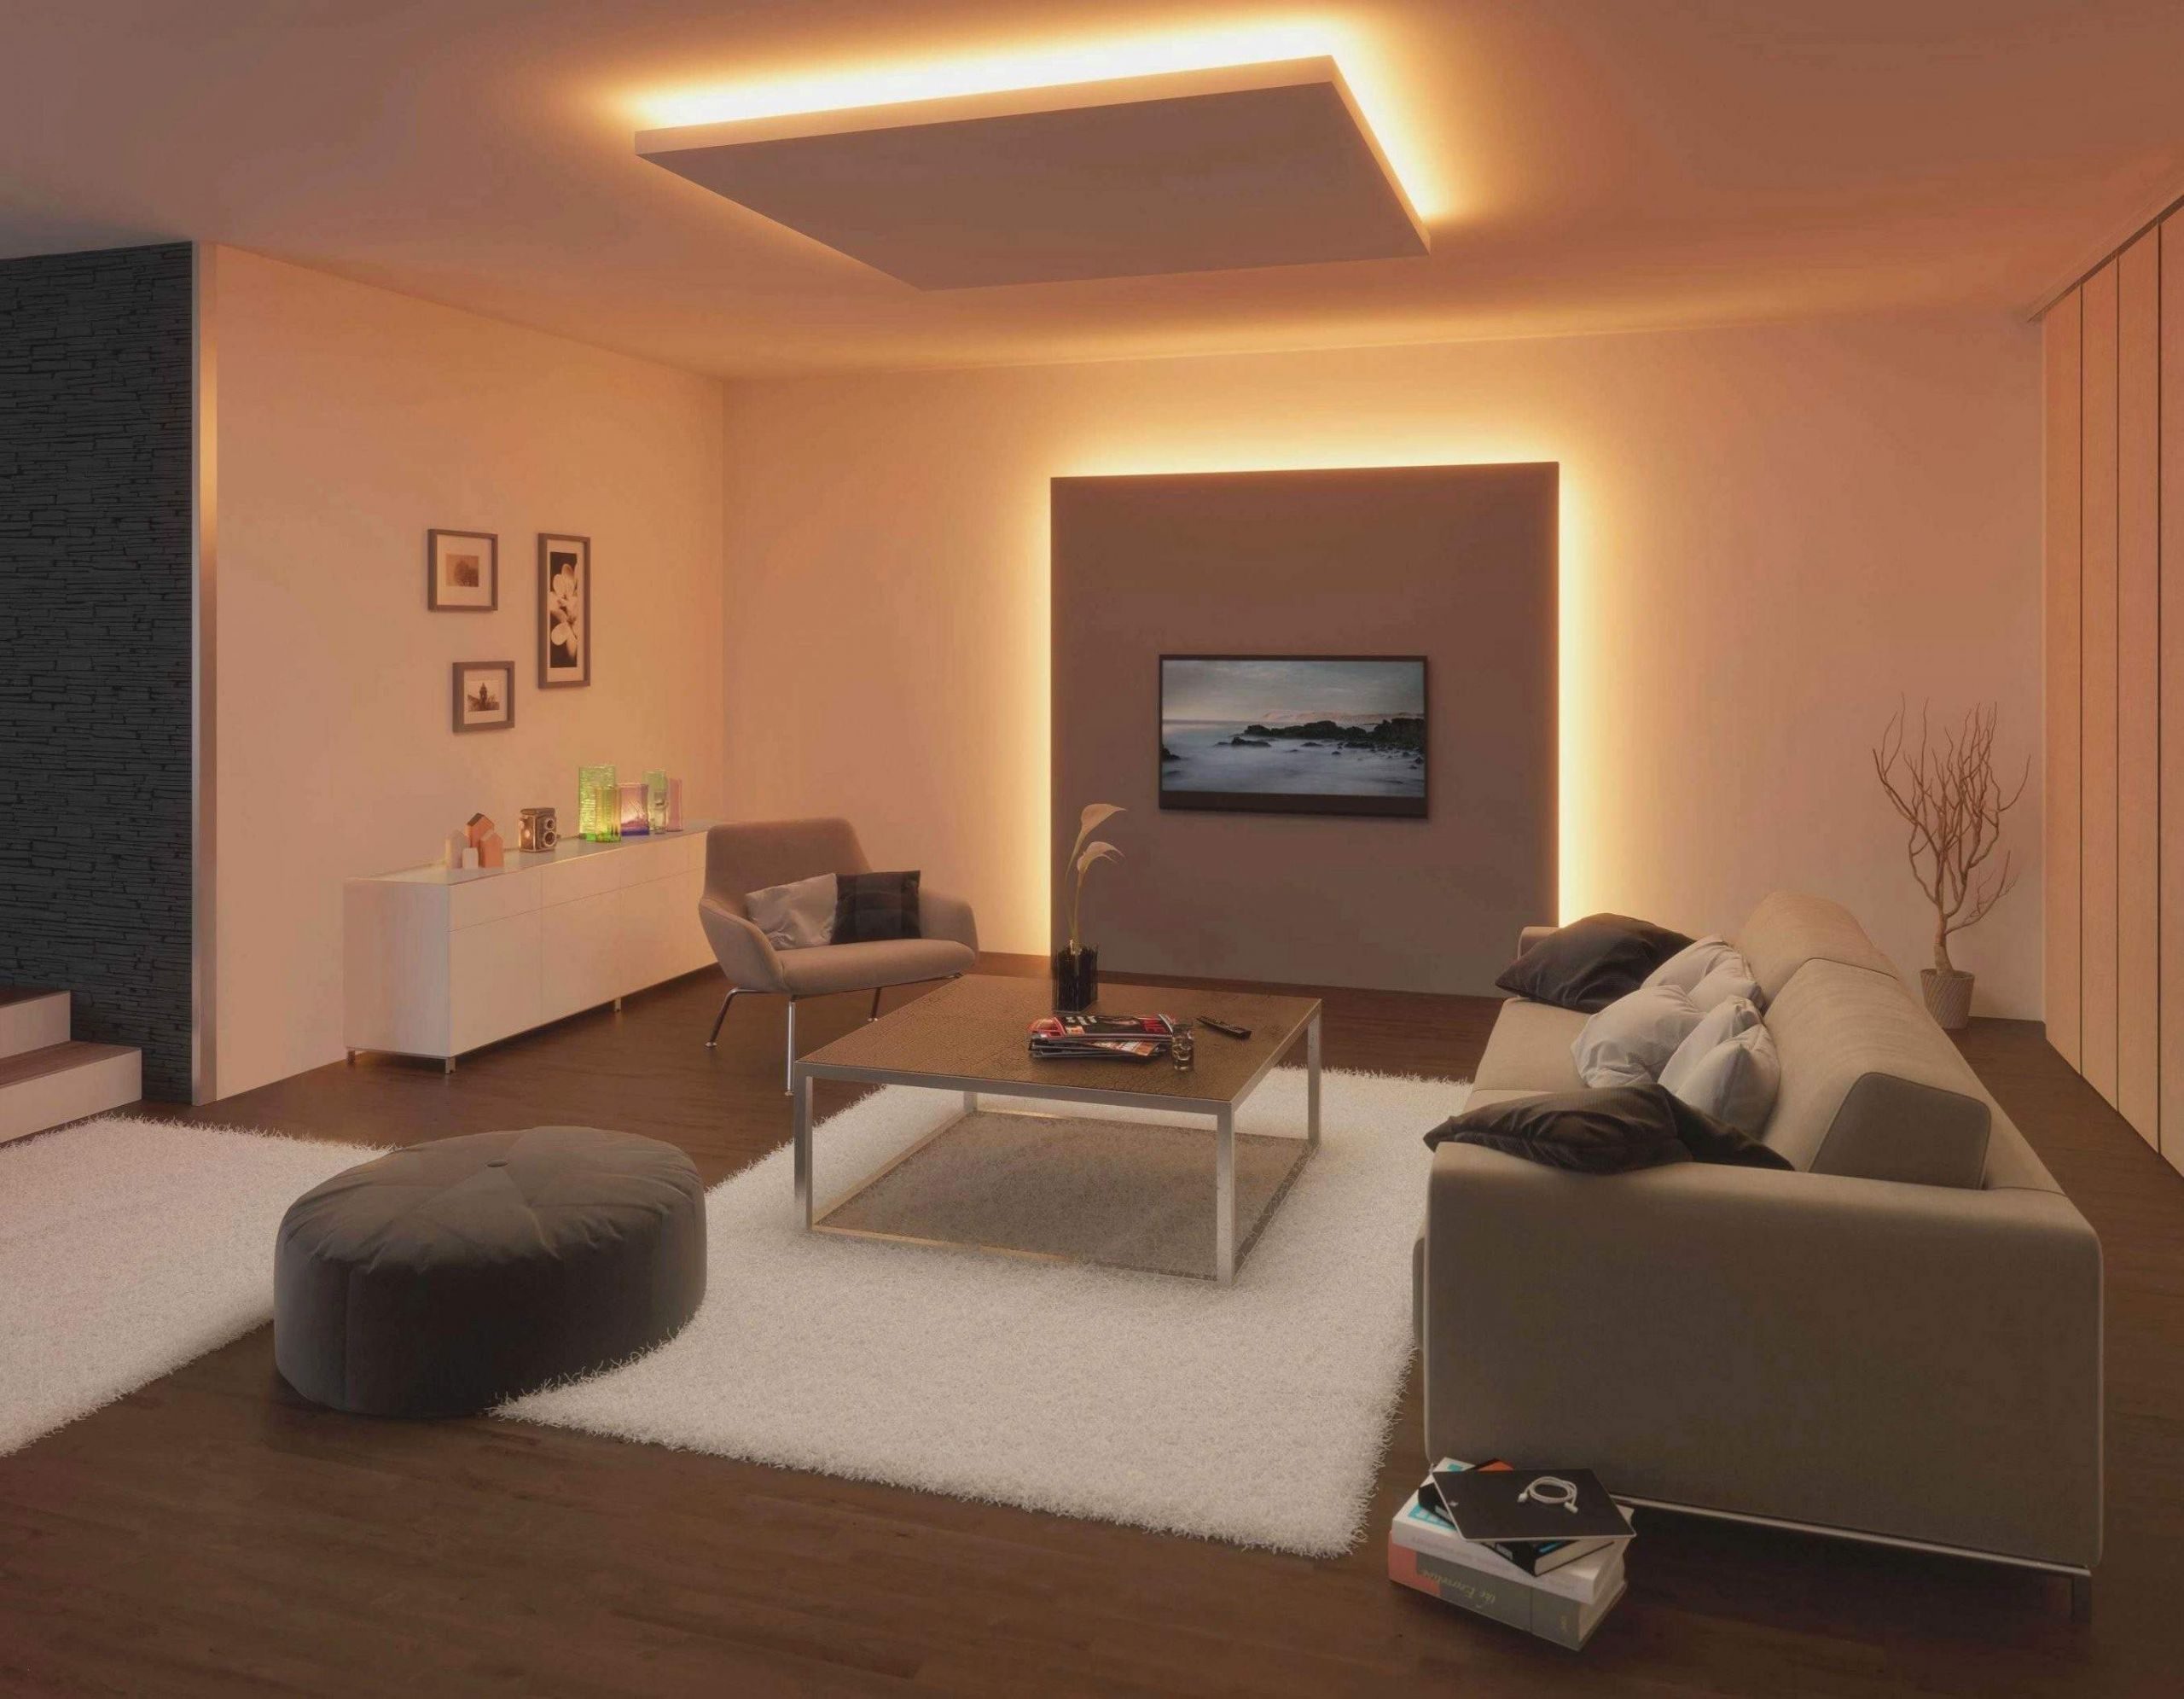 led leuchten wohnzimmer schon ikea lampen wohnzimmer design besten ideen ses jahr of led leuchten wohnzimmer